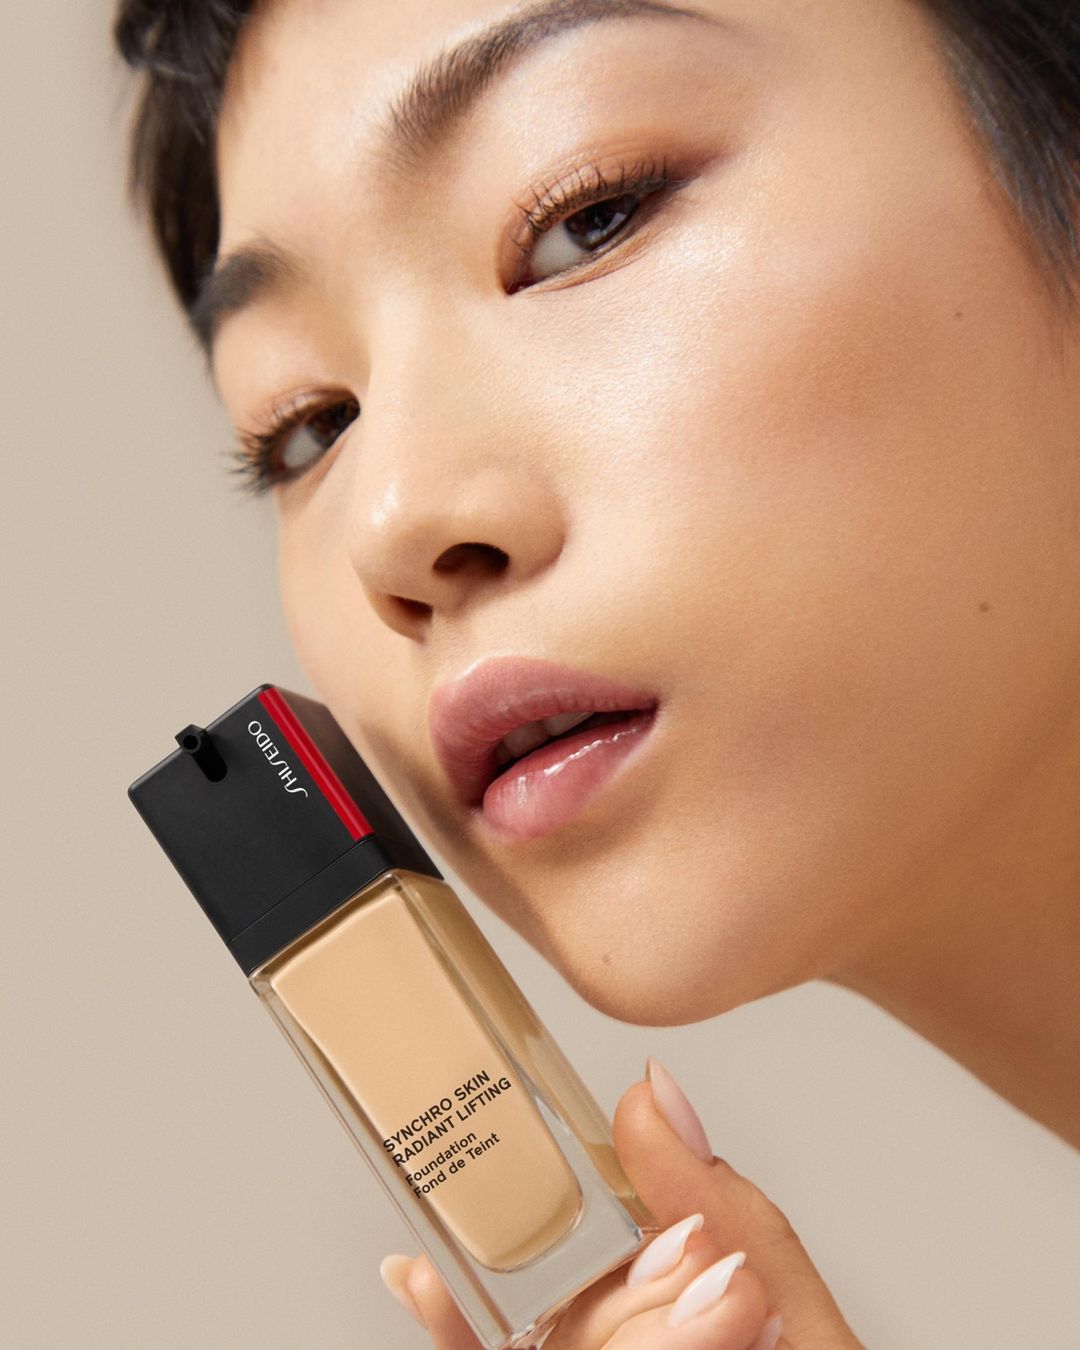 Luminous gaze. Shiseido radiant